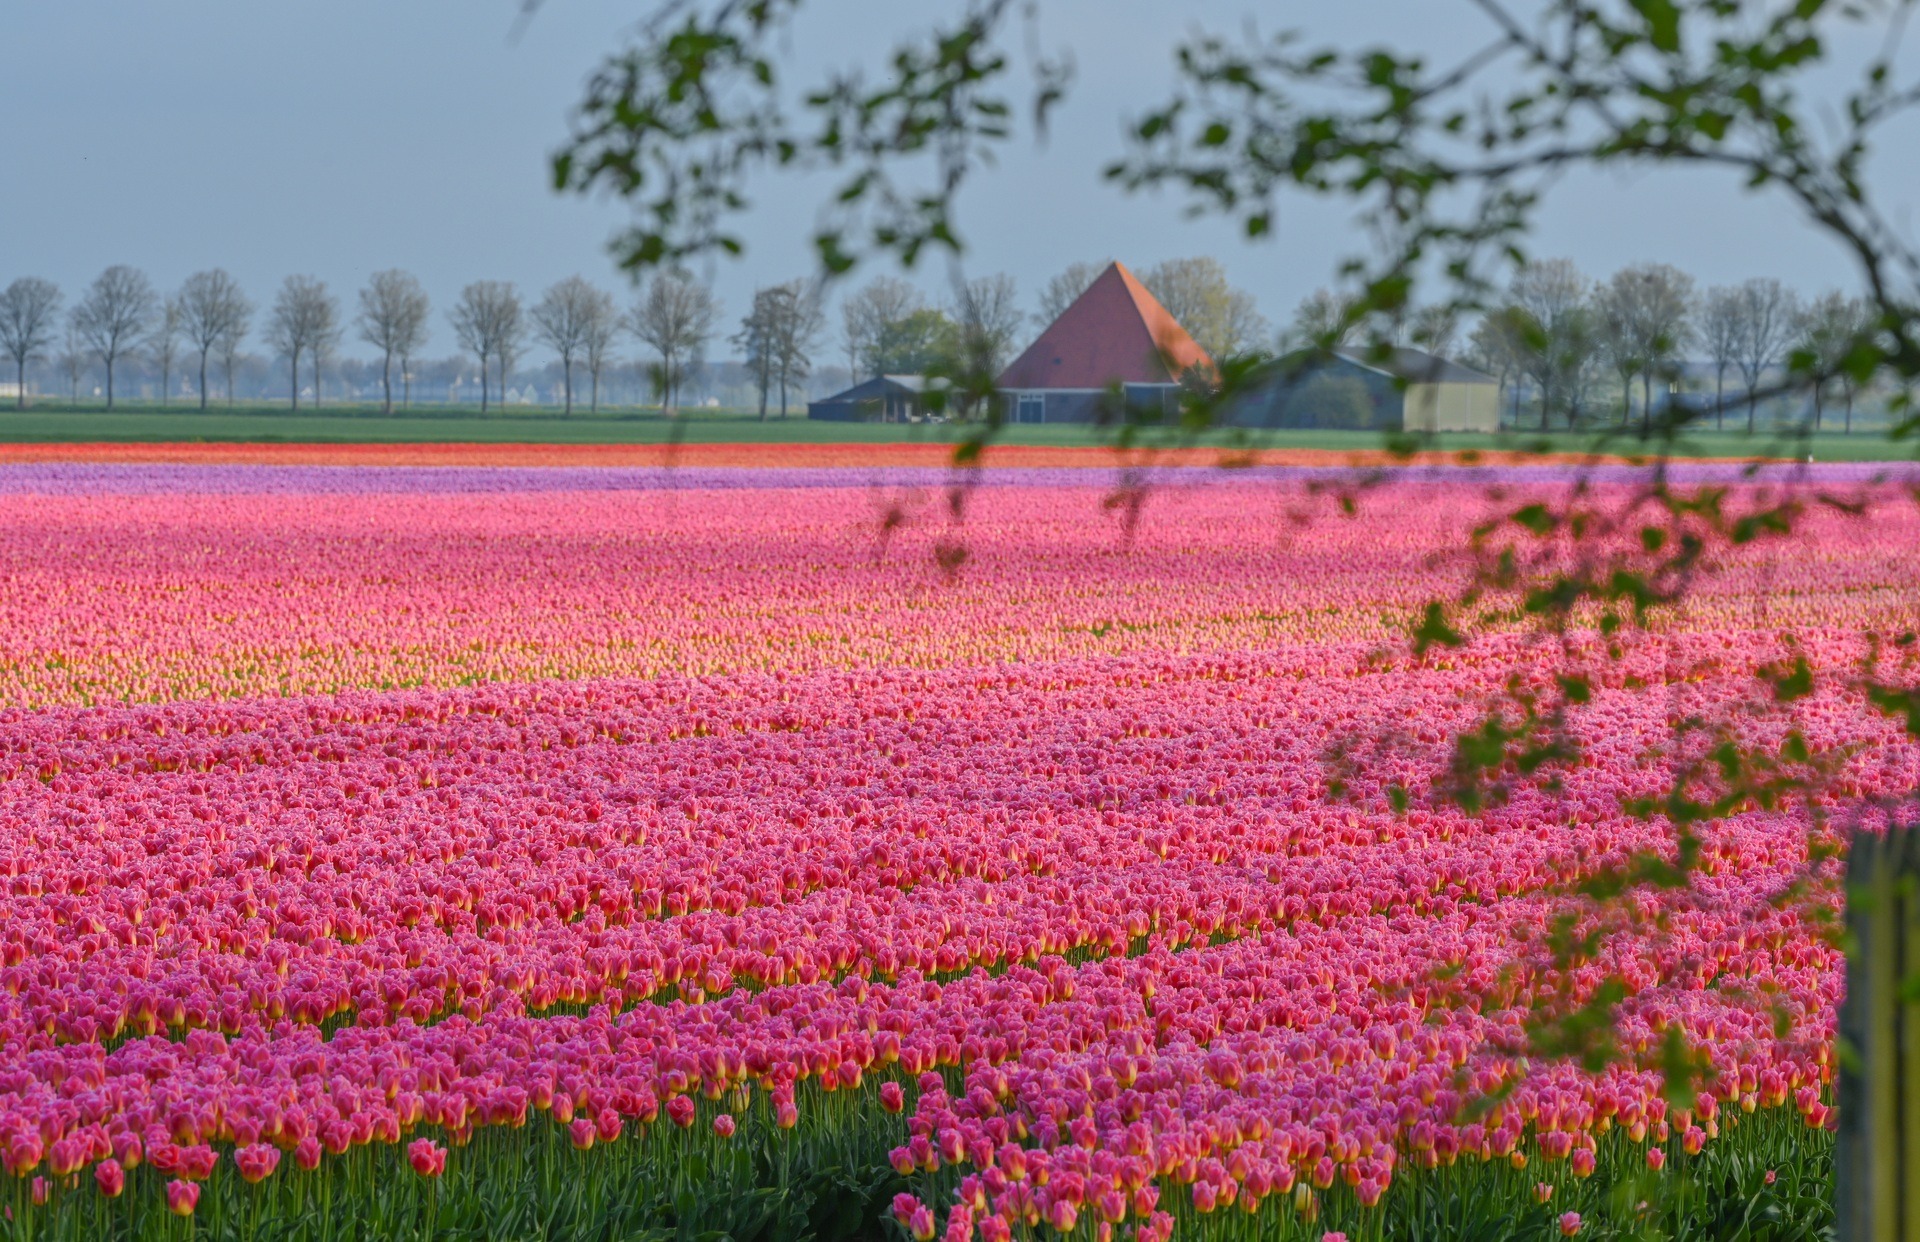 Mãn nhãn cánh đồng hoa tulip đẹp như cổ tích ở ngôi làng cổ 400 tuổi - Ảnh 6.